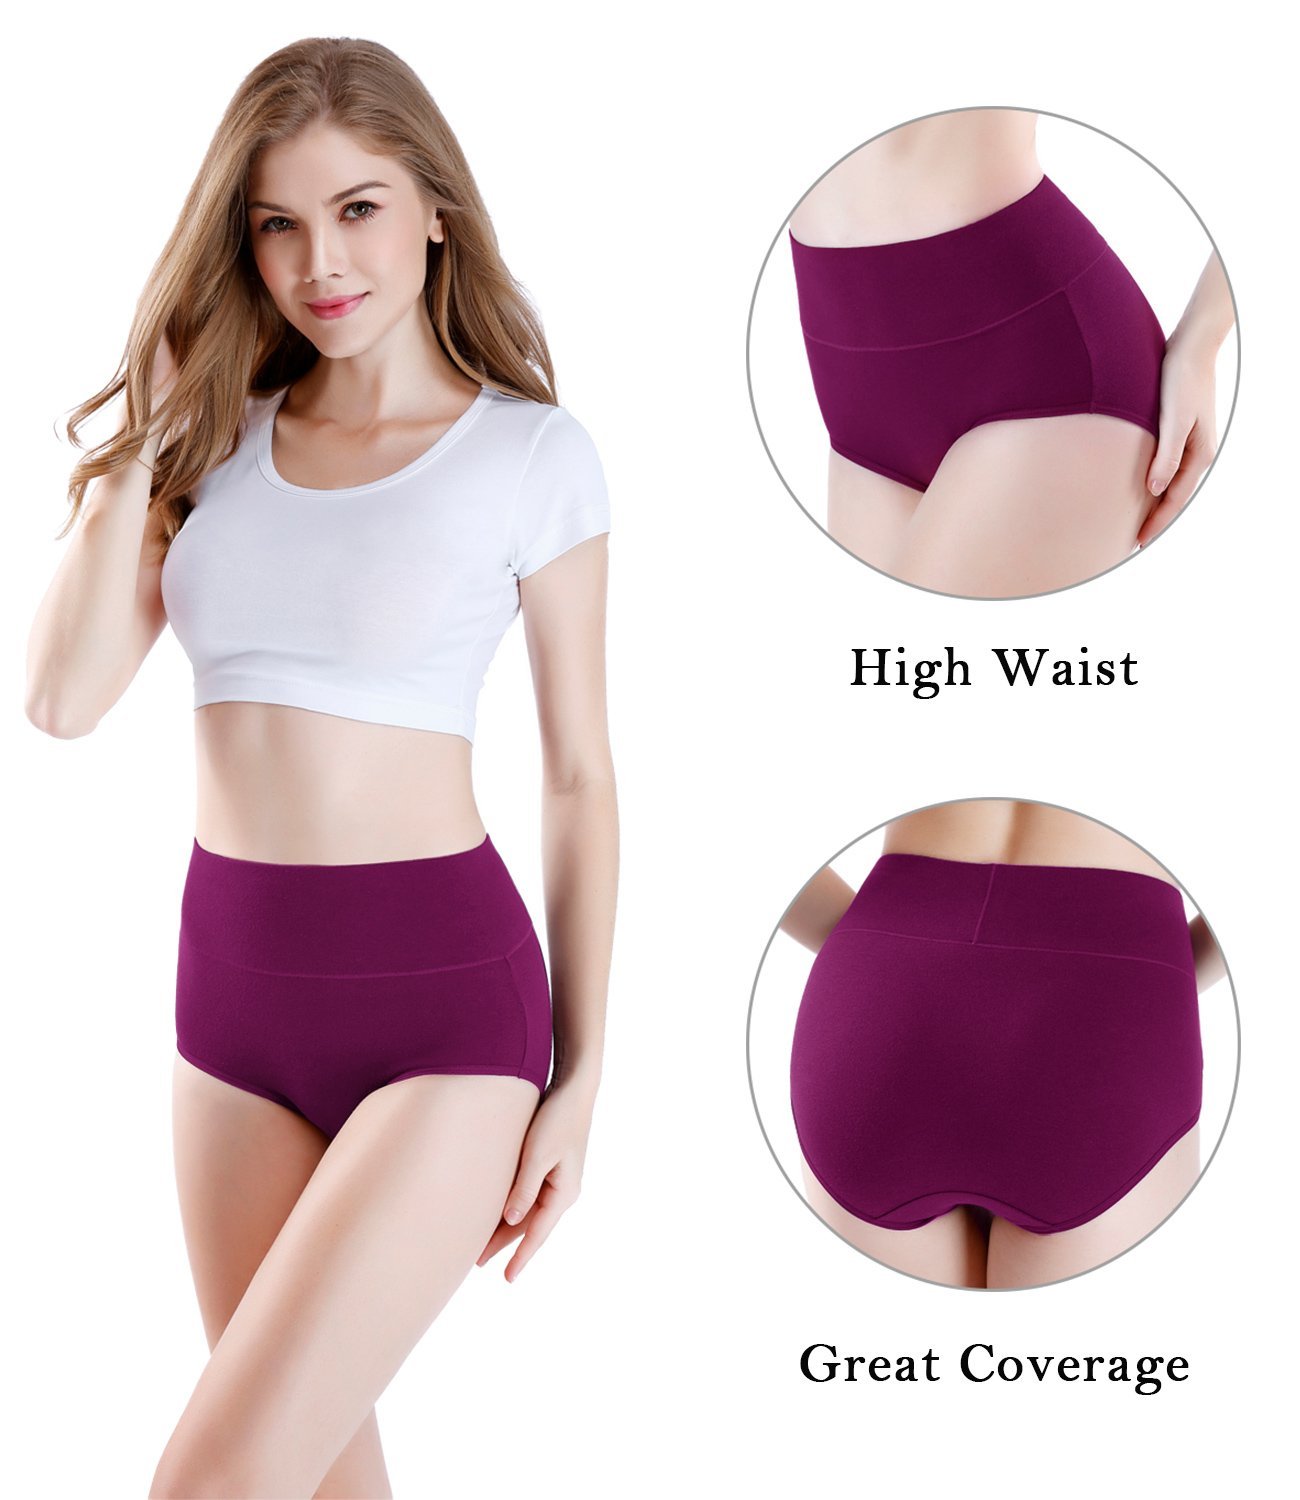 Wirarpa Women's Underwear High Waisted Full Coverage Cotton Briefs 4  Pack(L, Black/White/Heather Grey/Beige) 